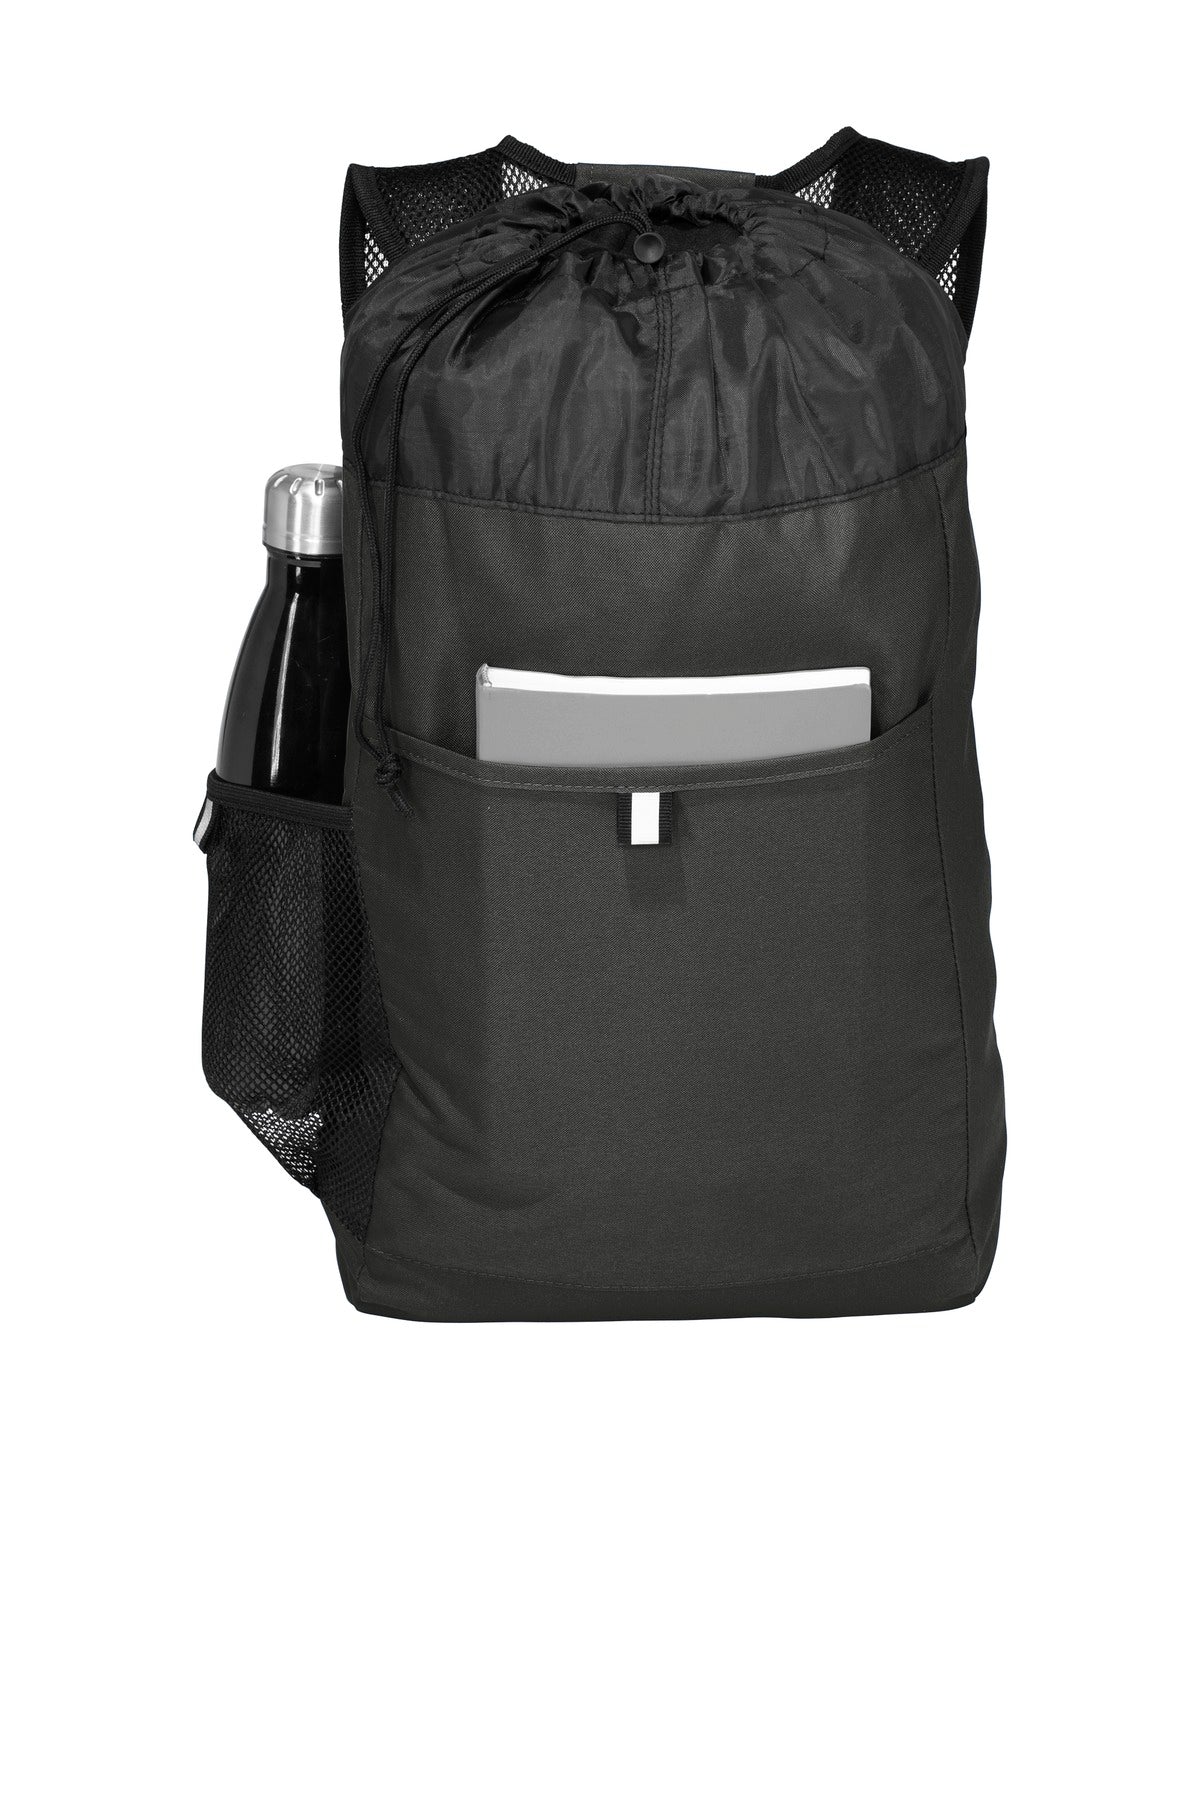 Port Authority Hybrid Backpack. BG211